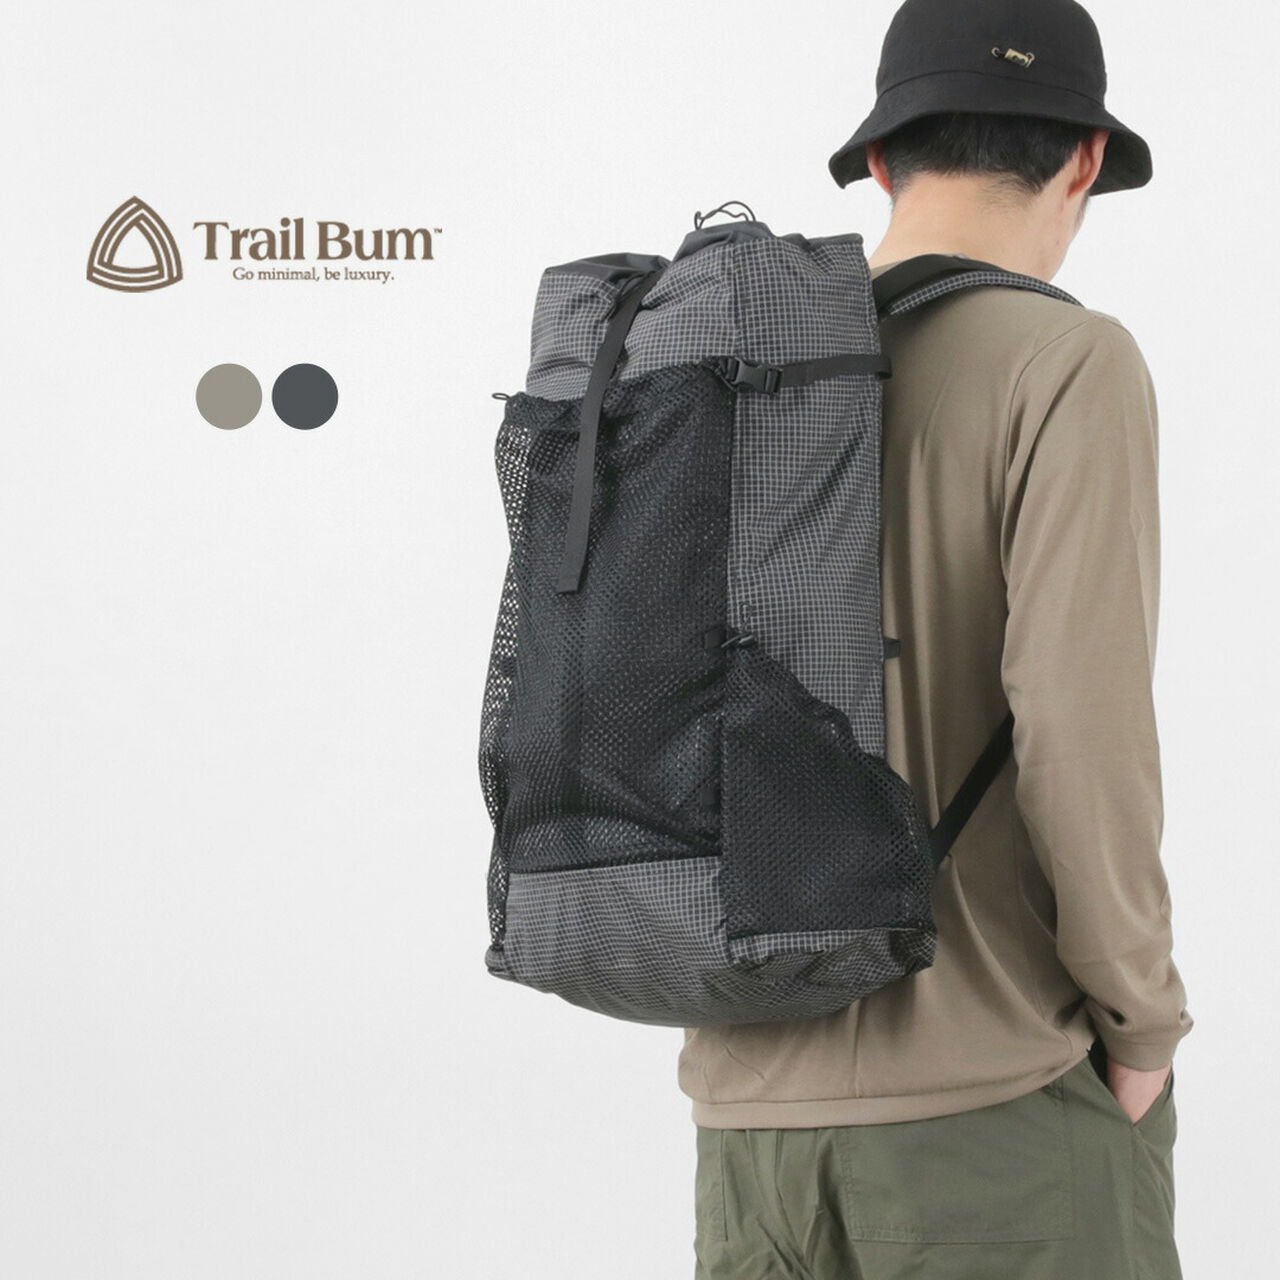 Bamar Spectra Ultralight Hiking Backpack,, large image number 1